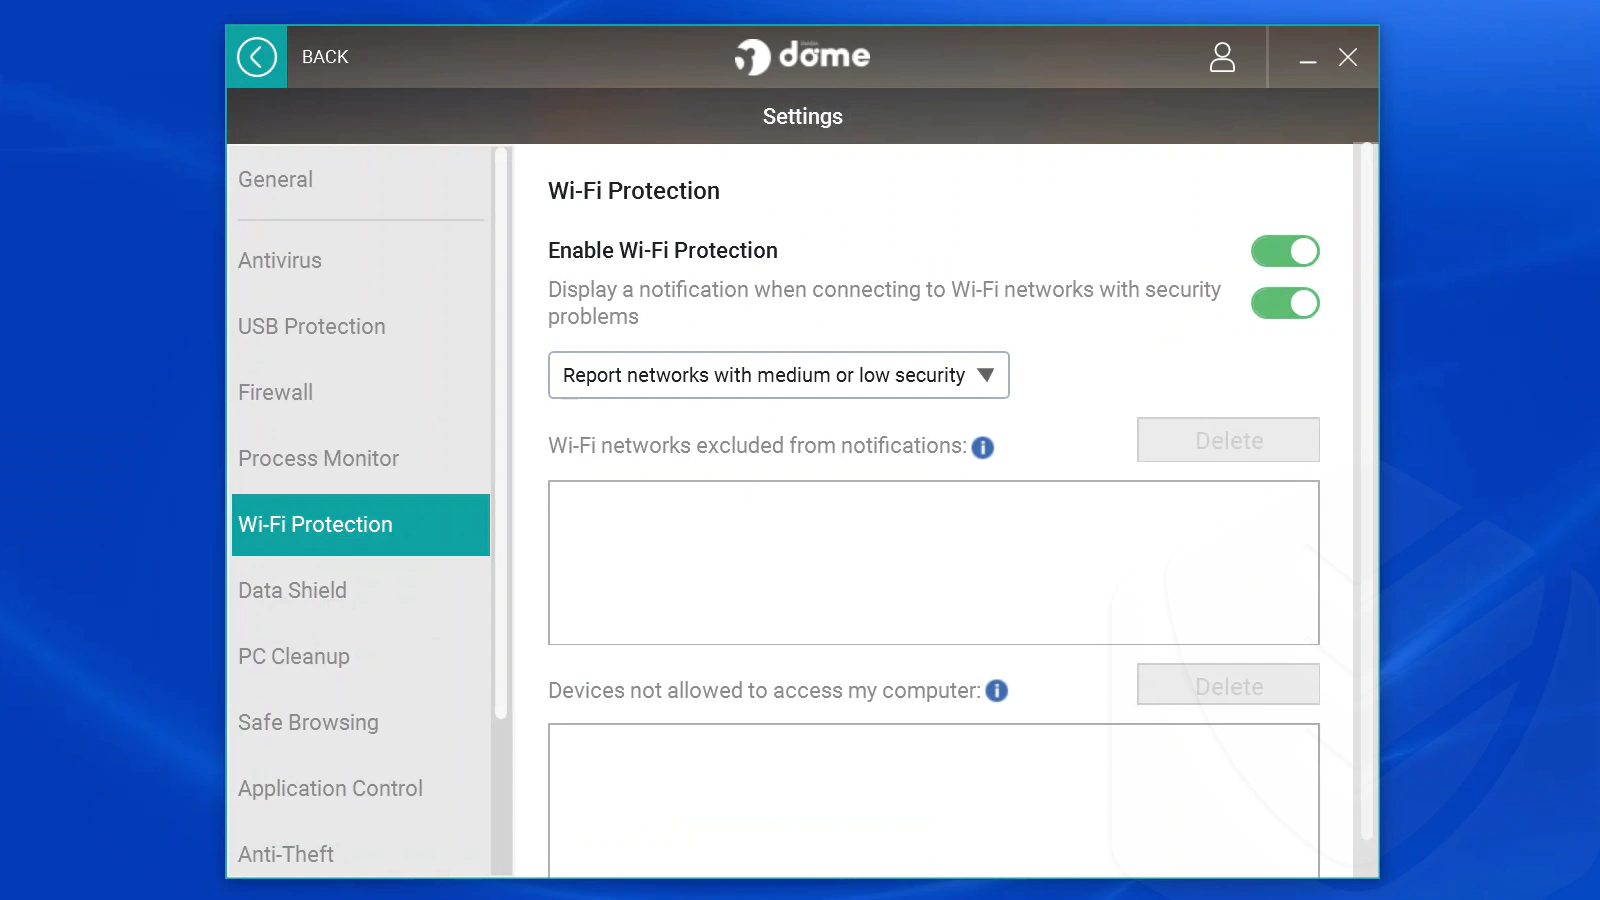 
Configurações da Proteção de Wi-FI do Panda